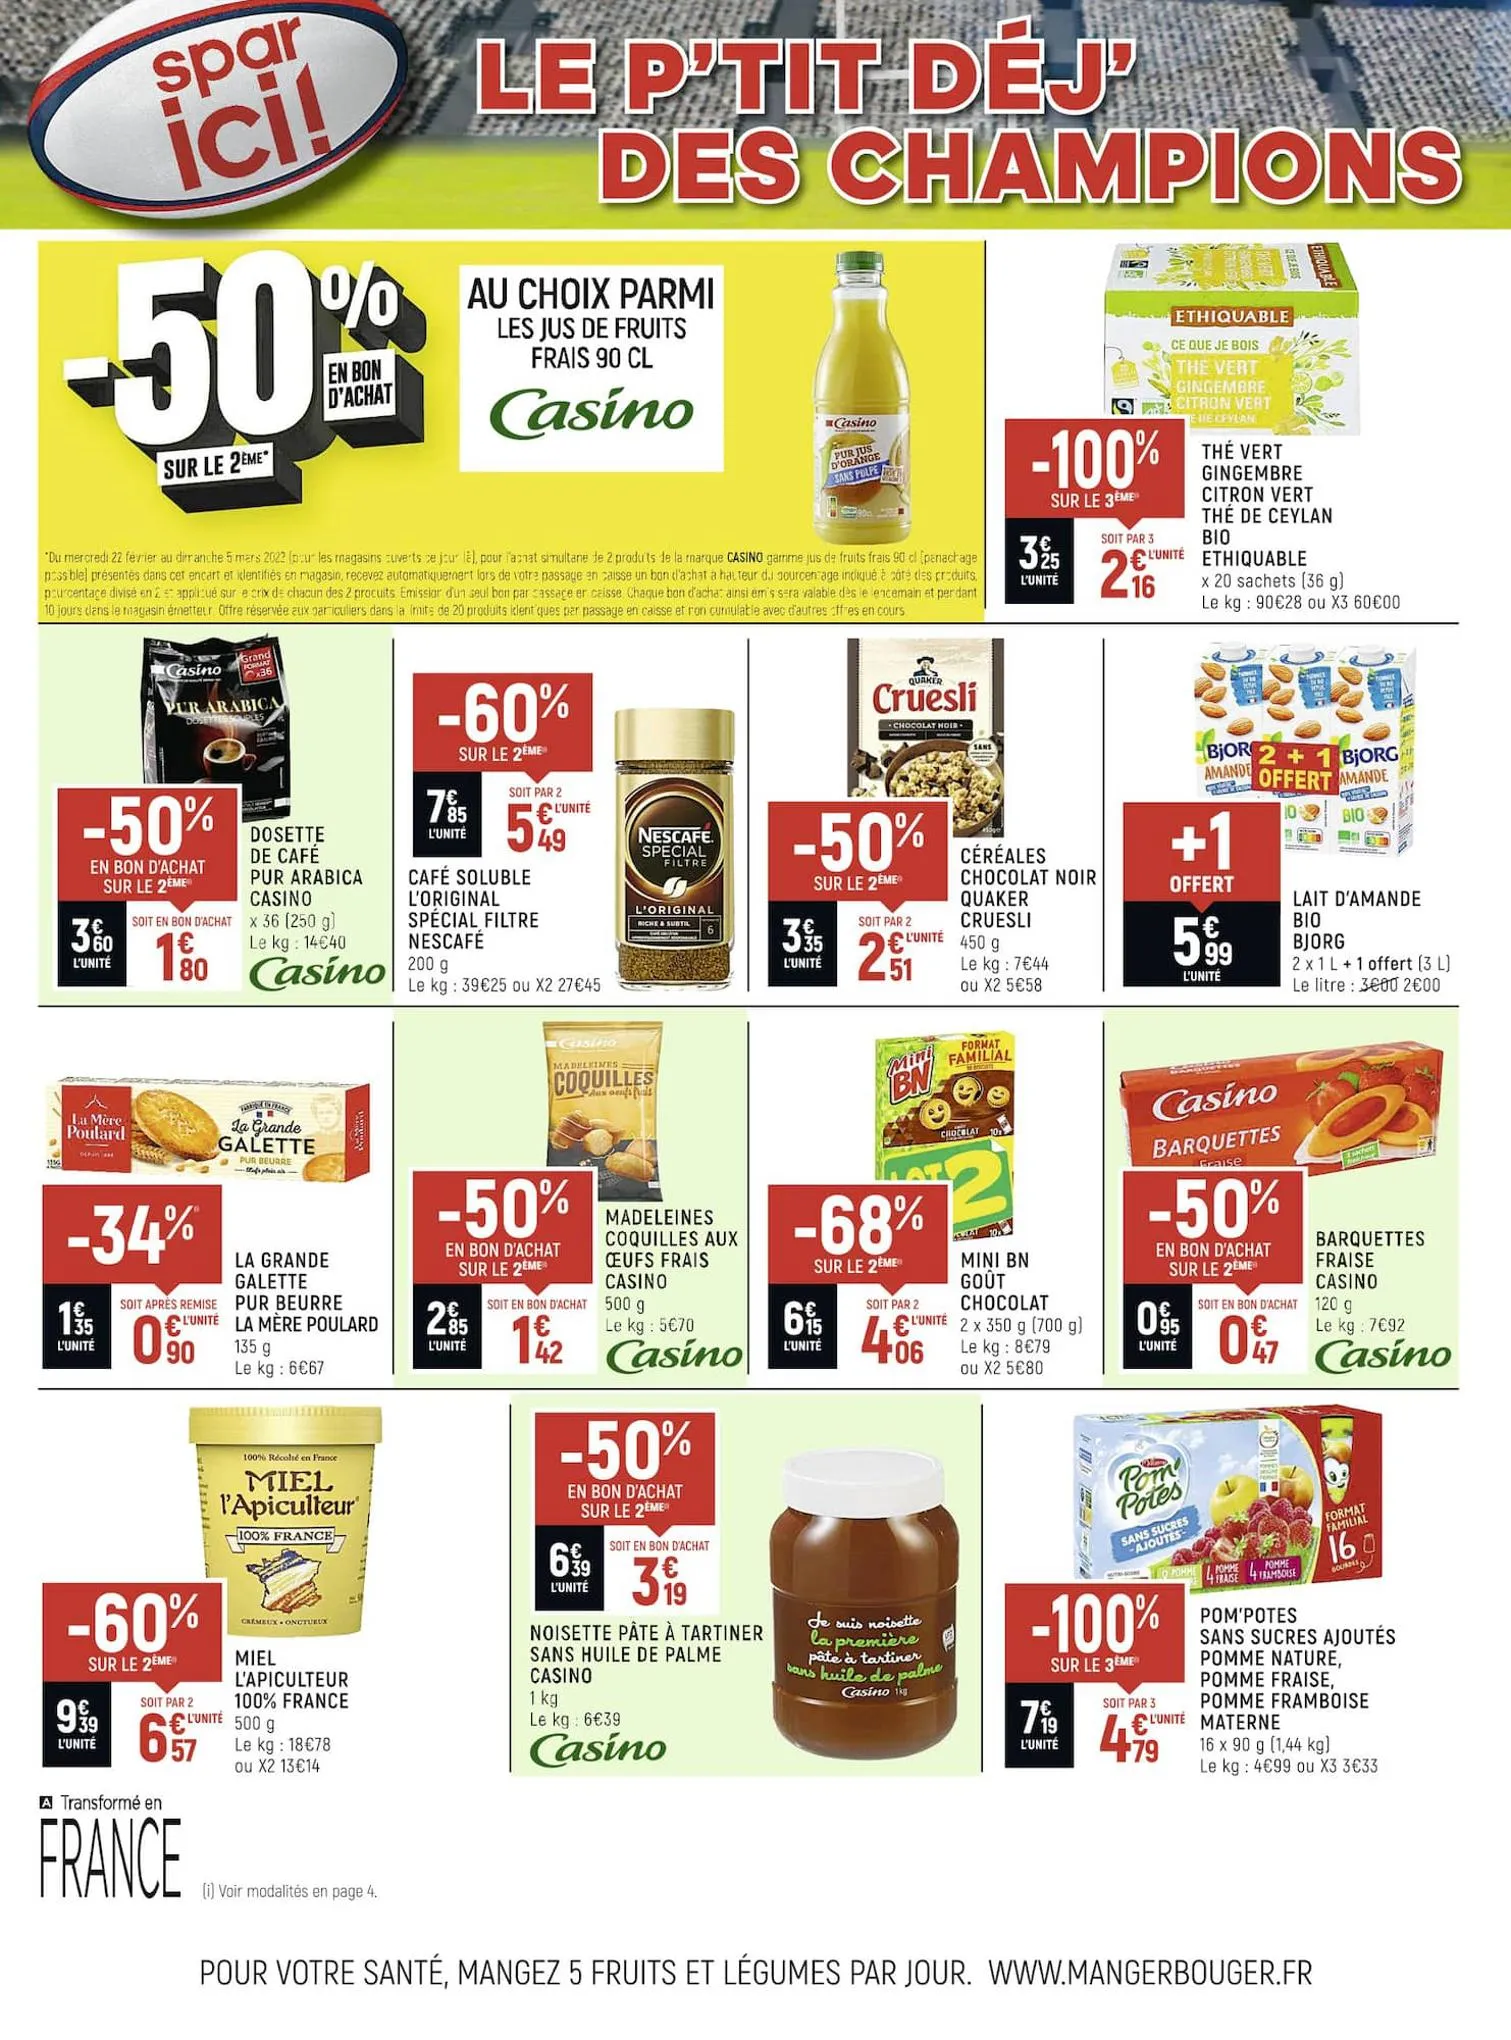 Catalogue Catalogue Spar Supermarché, page 00002